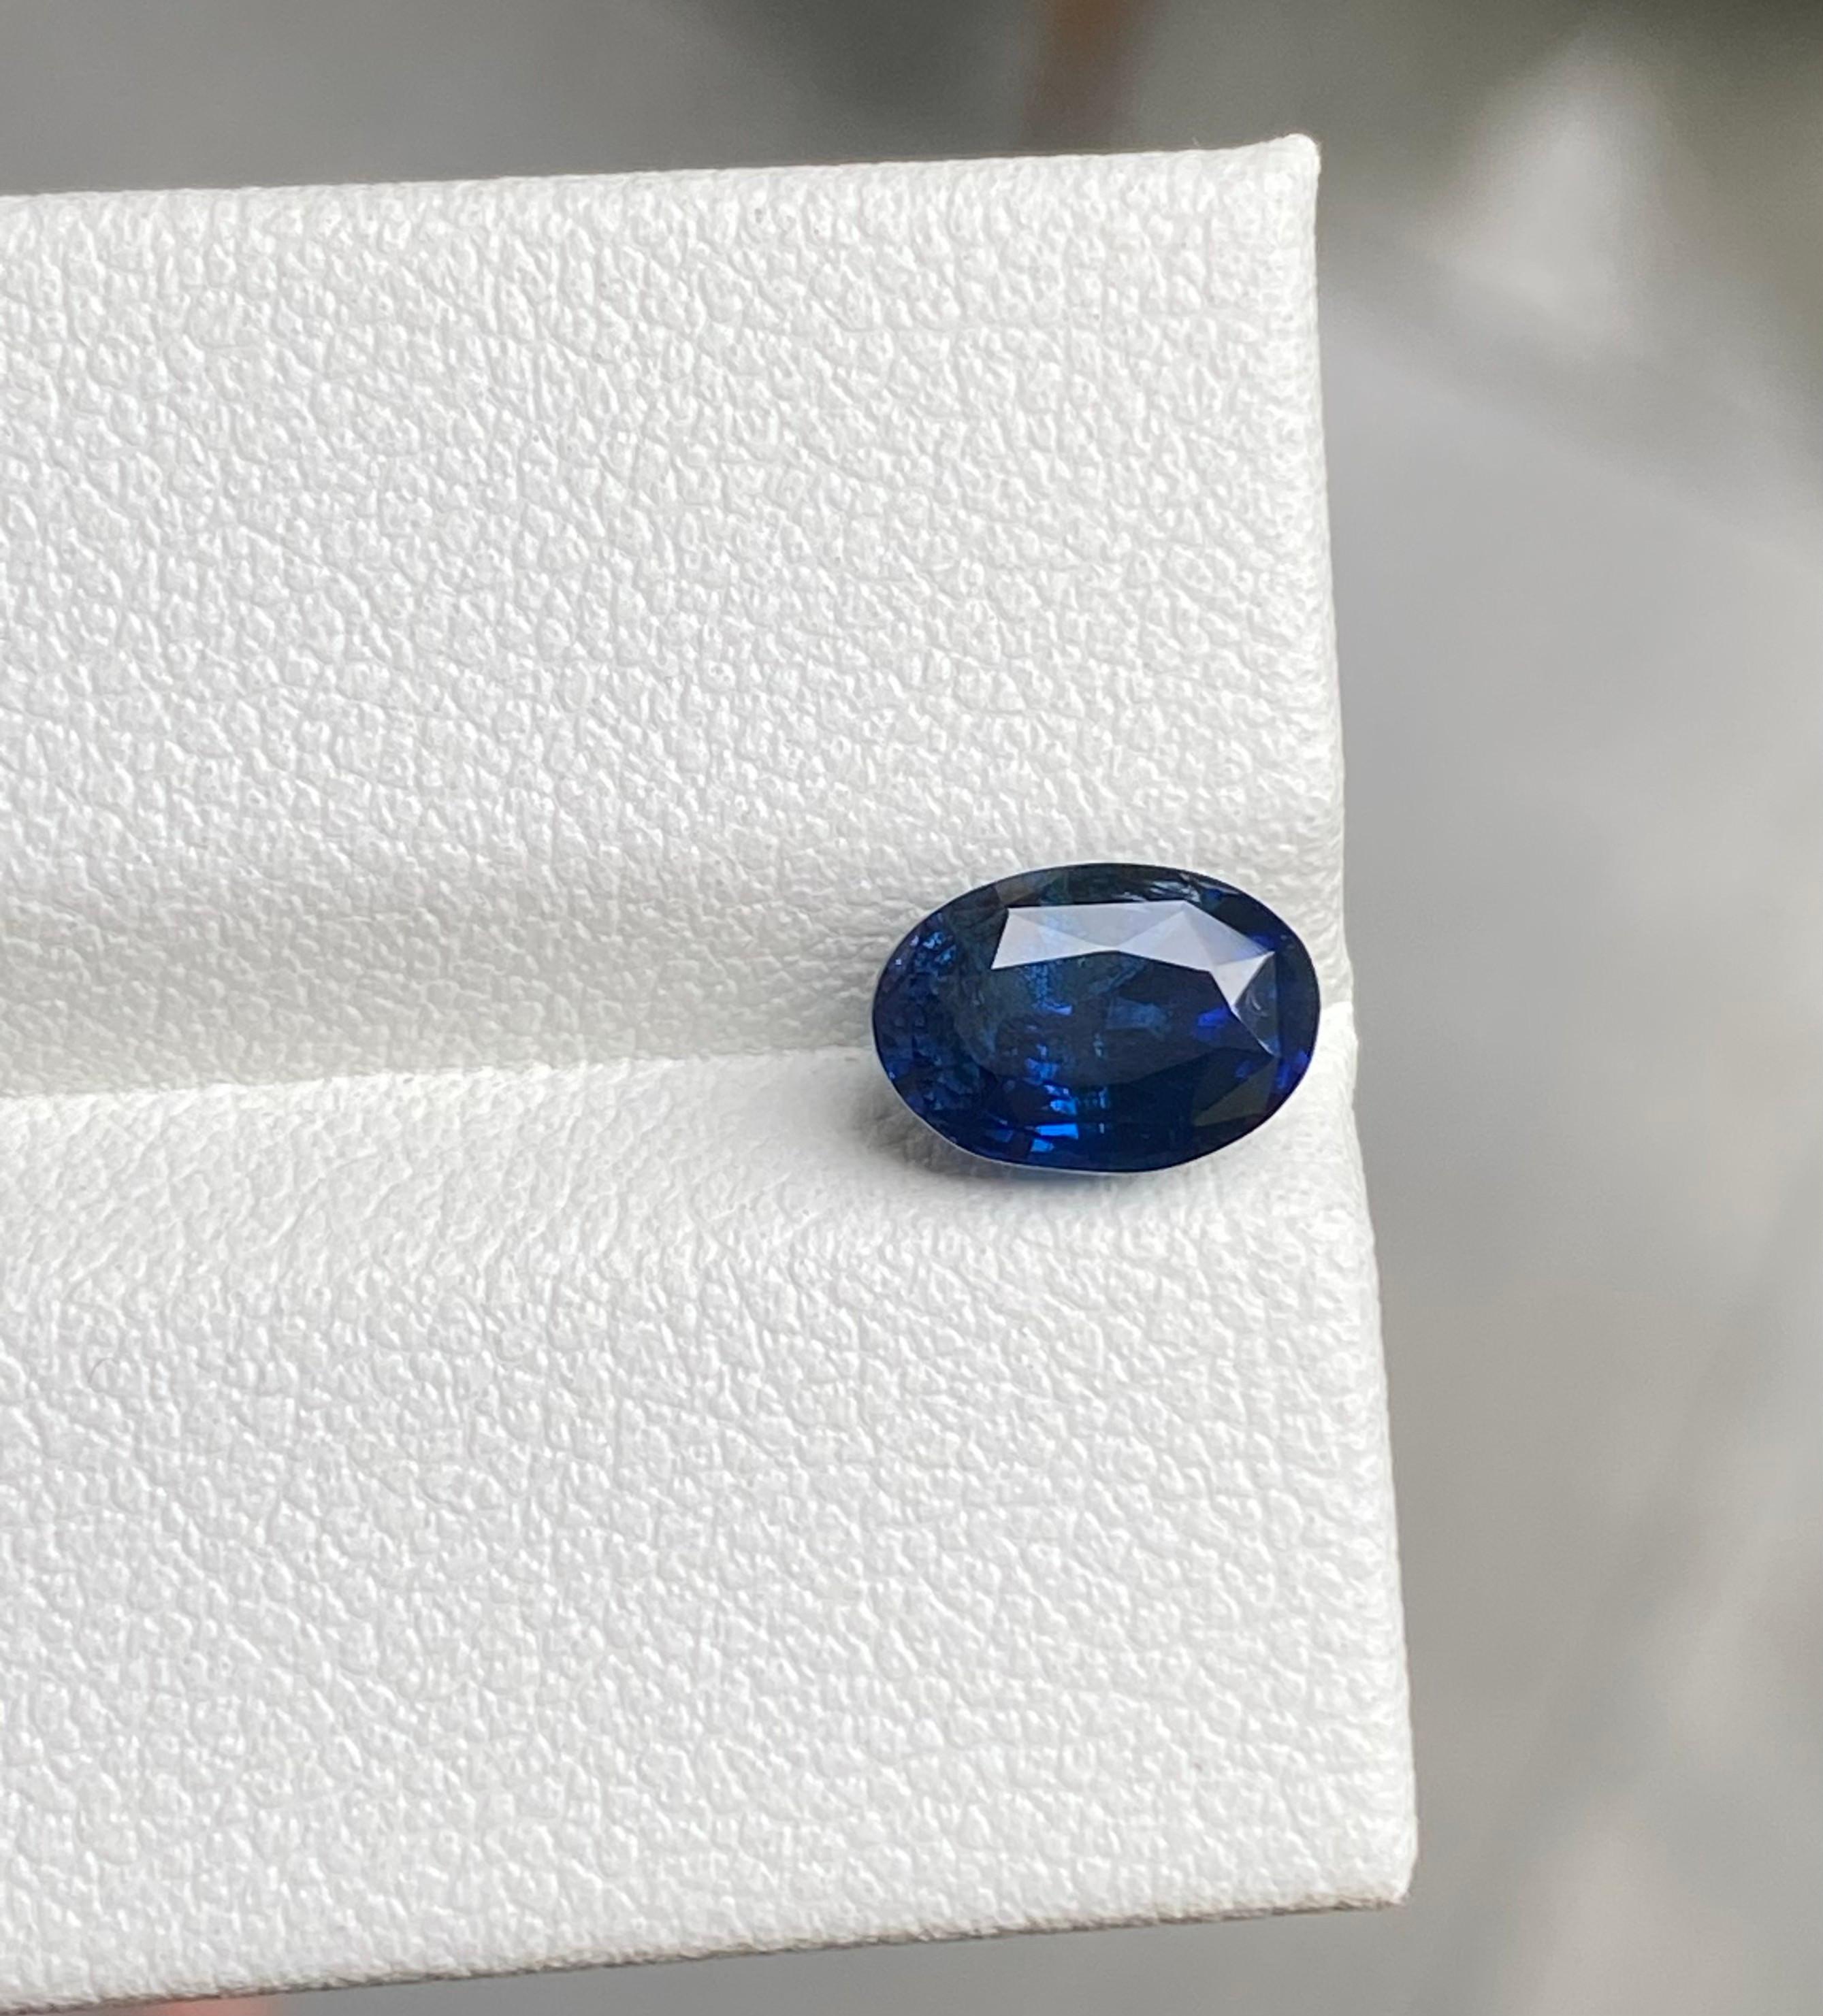 Saphir bleu royal de Ceylan de 2,10 carats, non chauffé, de couleur et d'éclat bleu royal, de taille parfaite, non chauffé. 

• Variété : Sapphire
• Origine : Sri Lanka (Ceylan)
• Couleur(s) : bleu royal
• Forme et style de coupe : Ovale
•